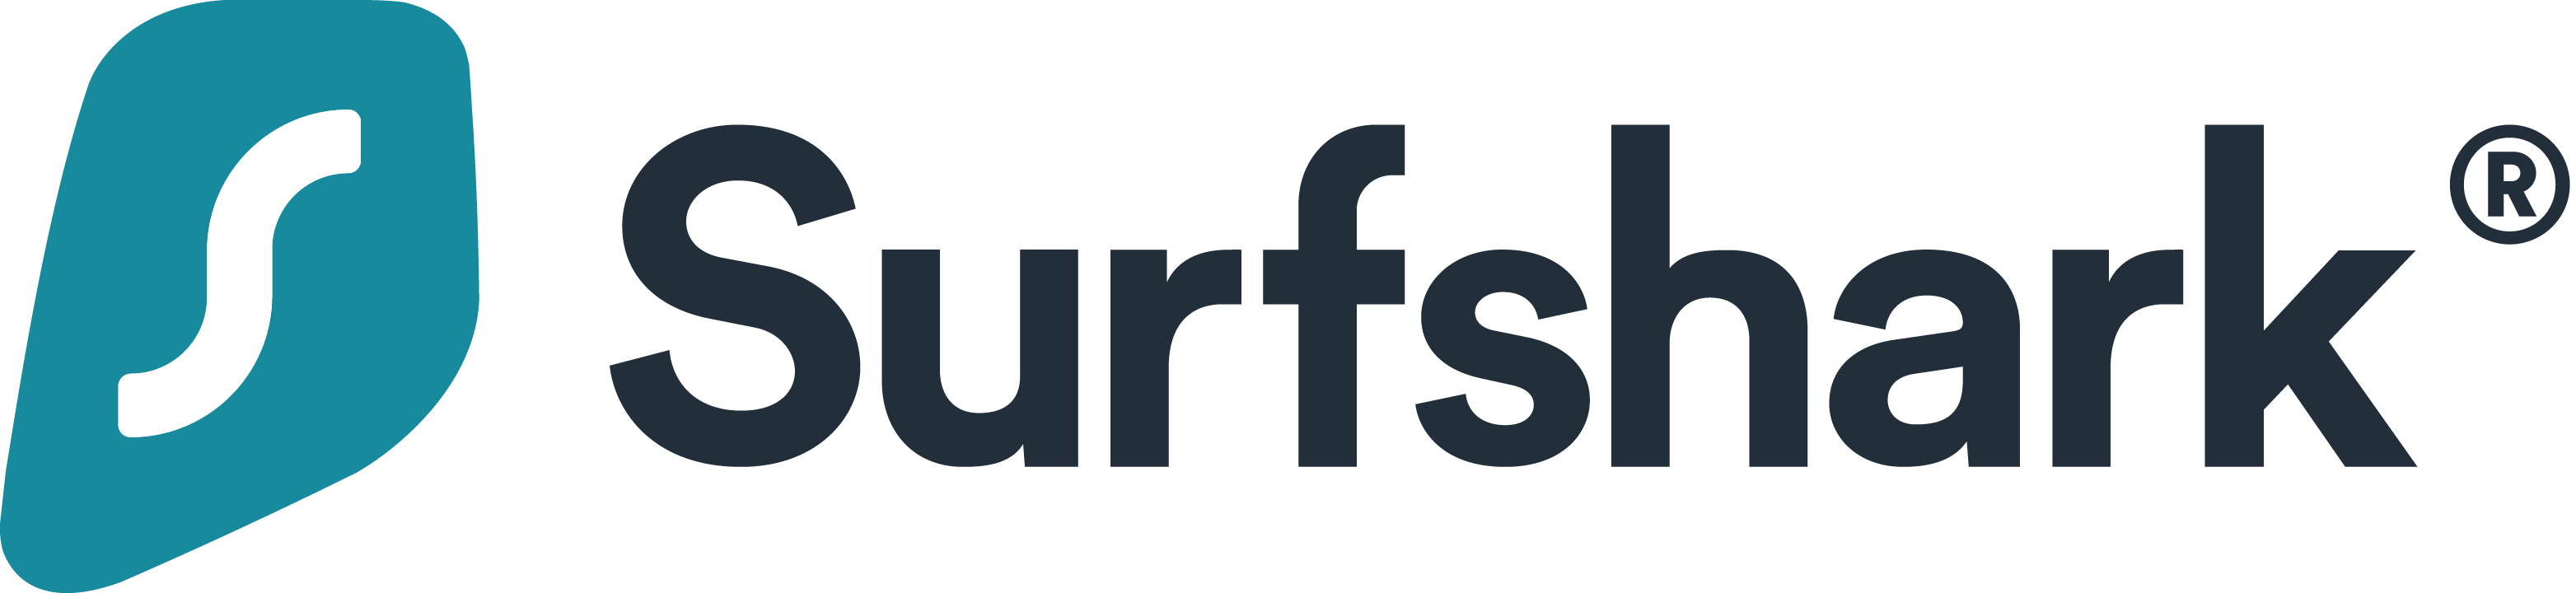 Surfshark_logo